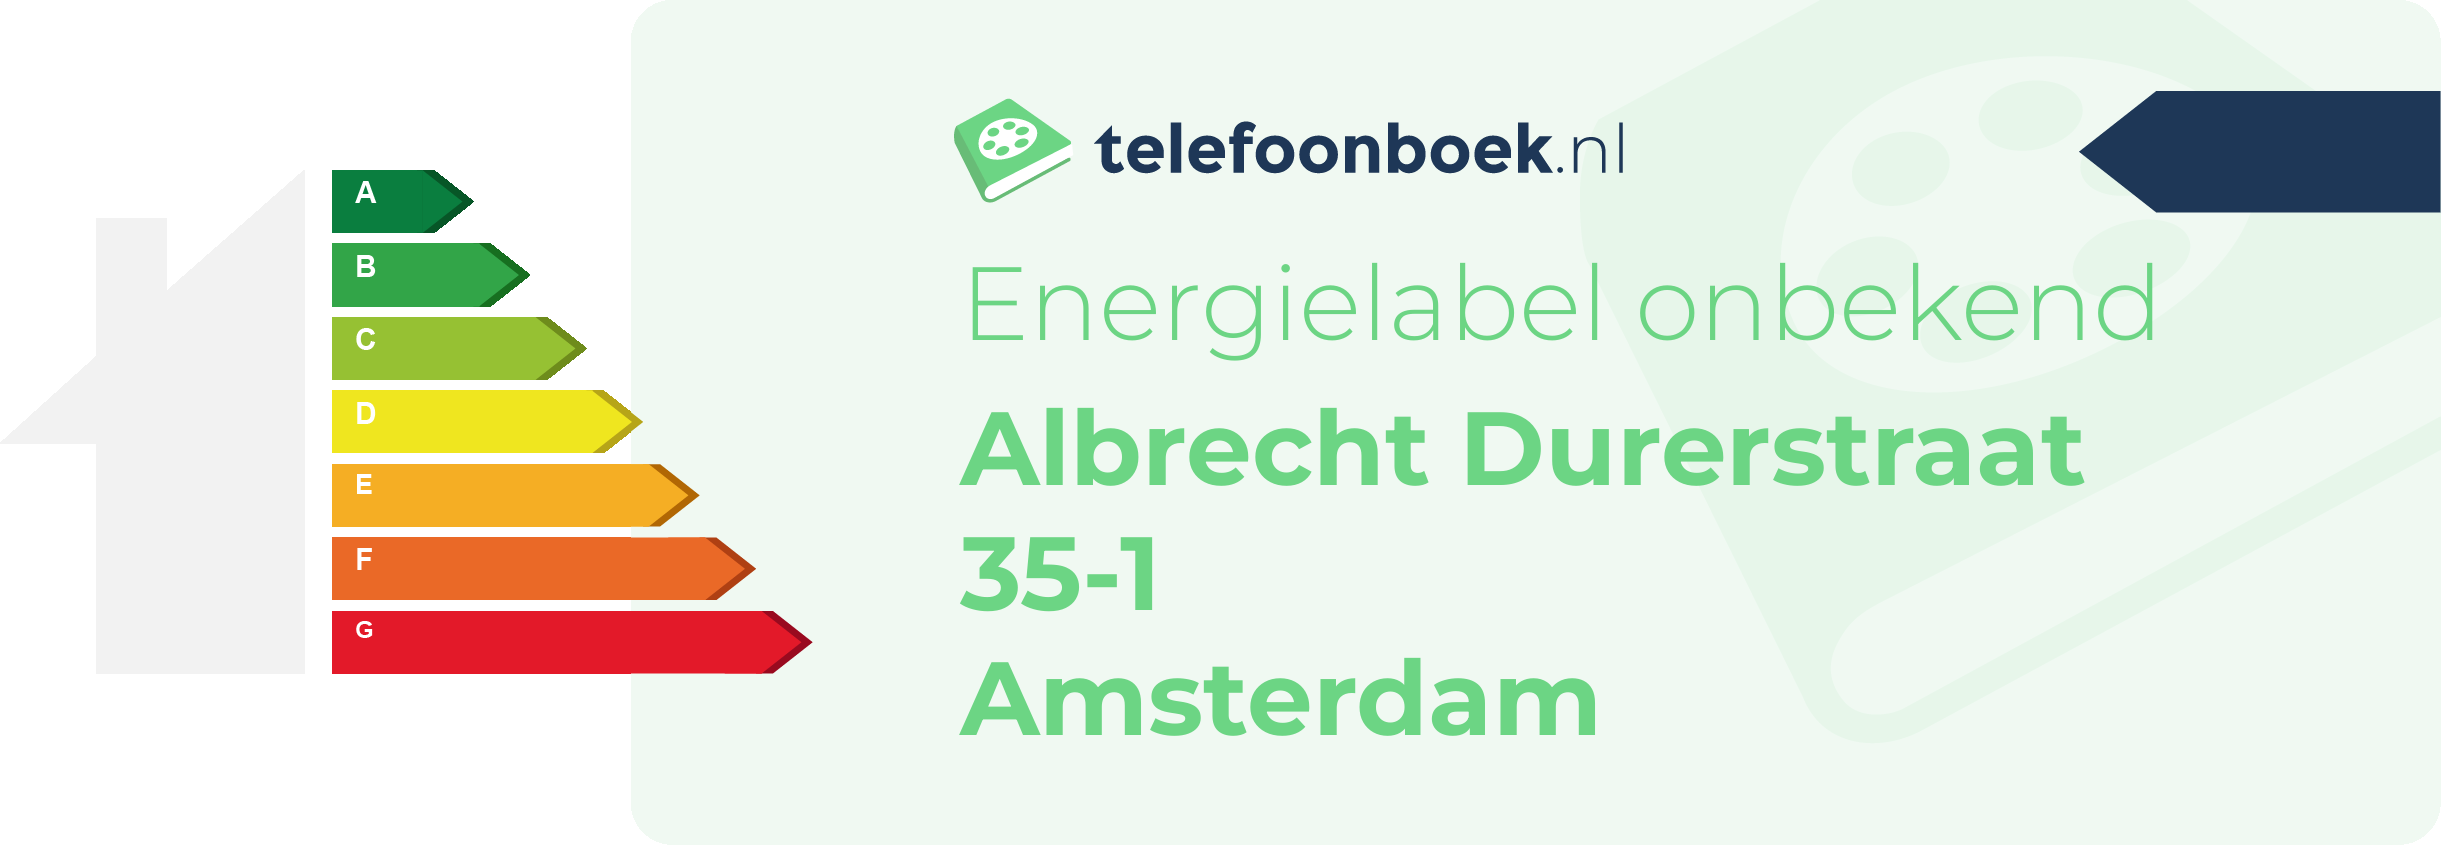 Energielabel Albrecht Durerstraat 35-1 Amsterdam